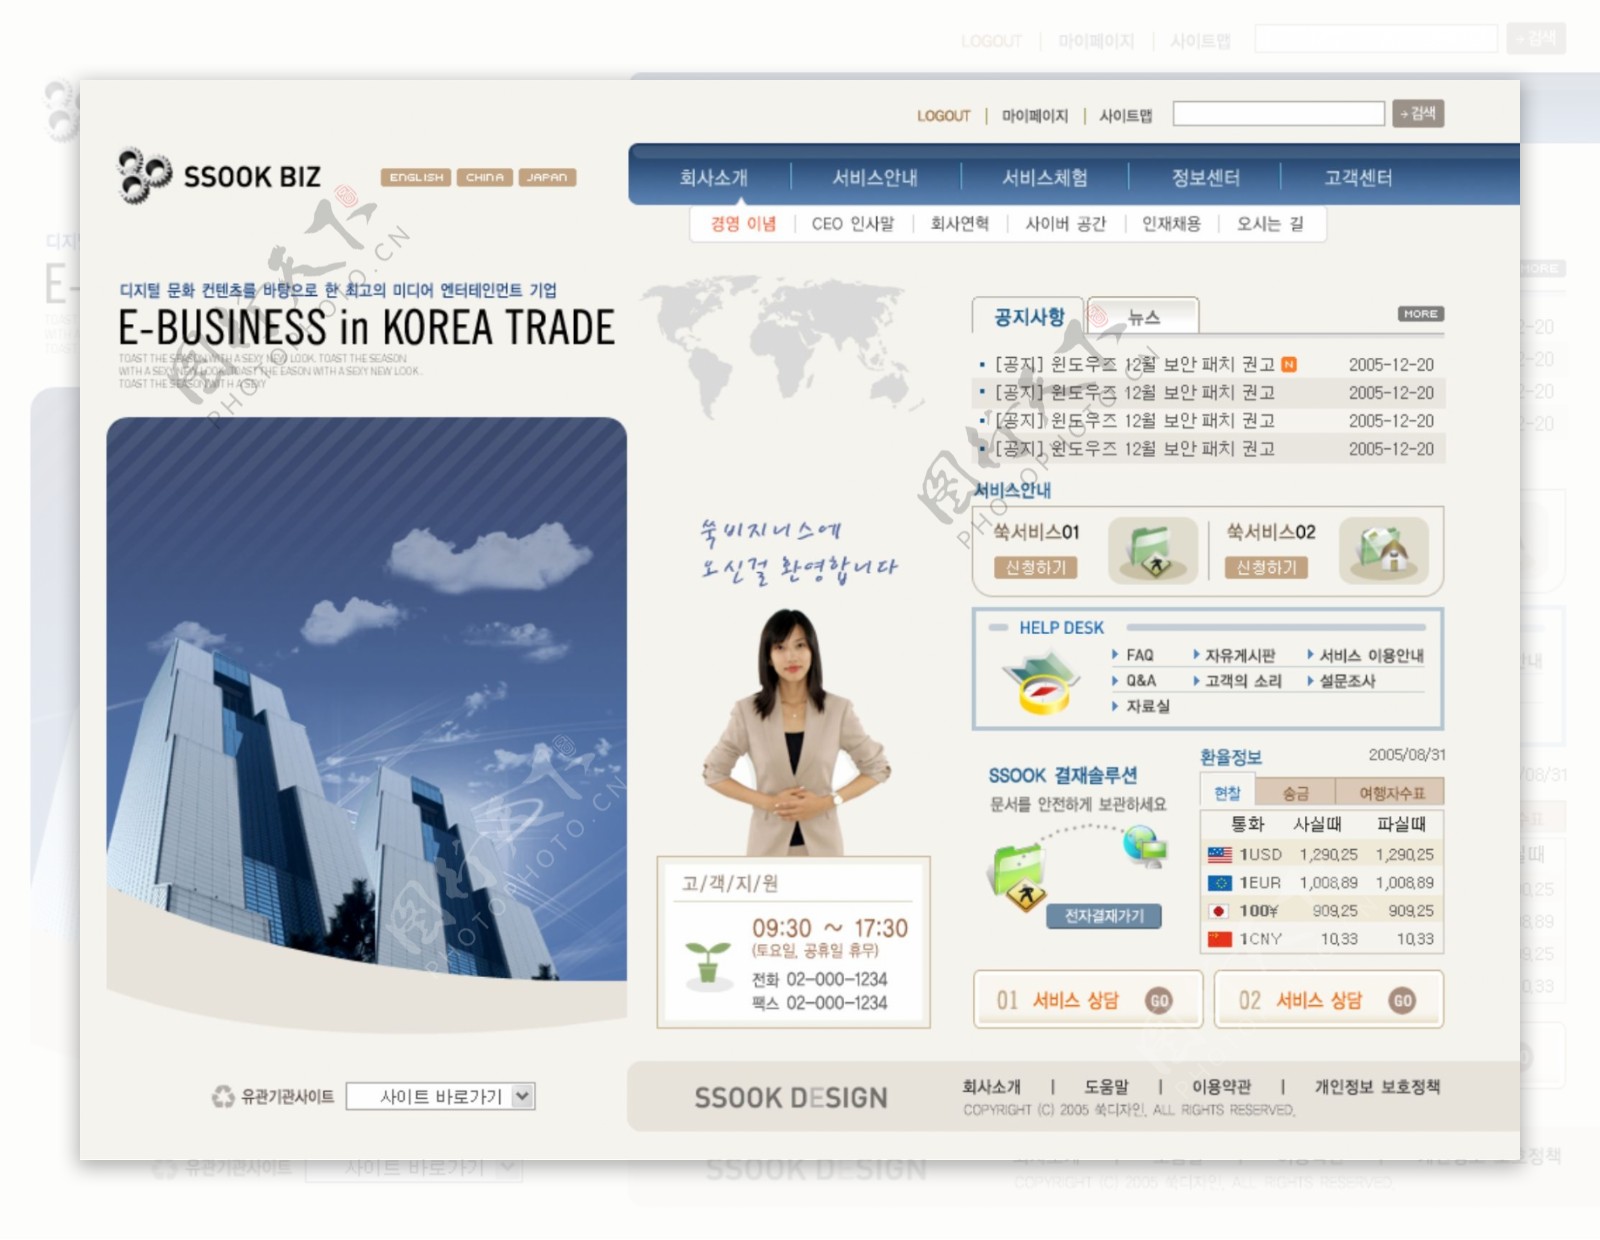 韩国时代商务中心网站页面模版PSD